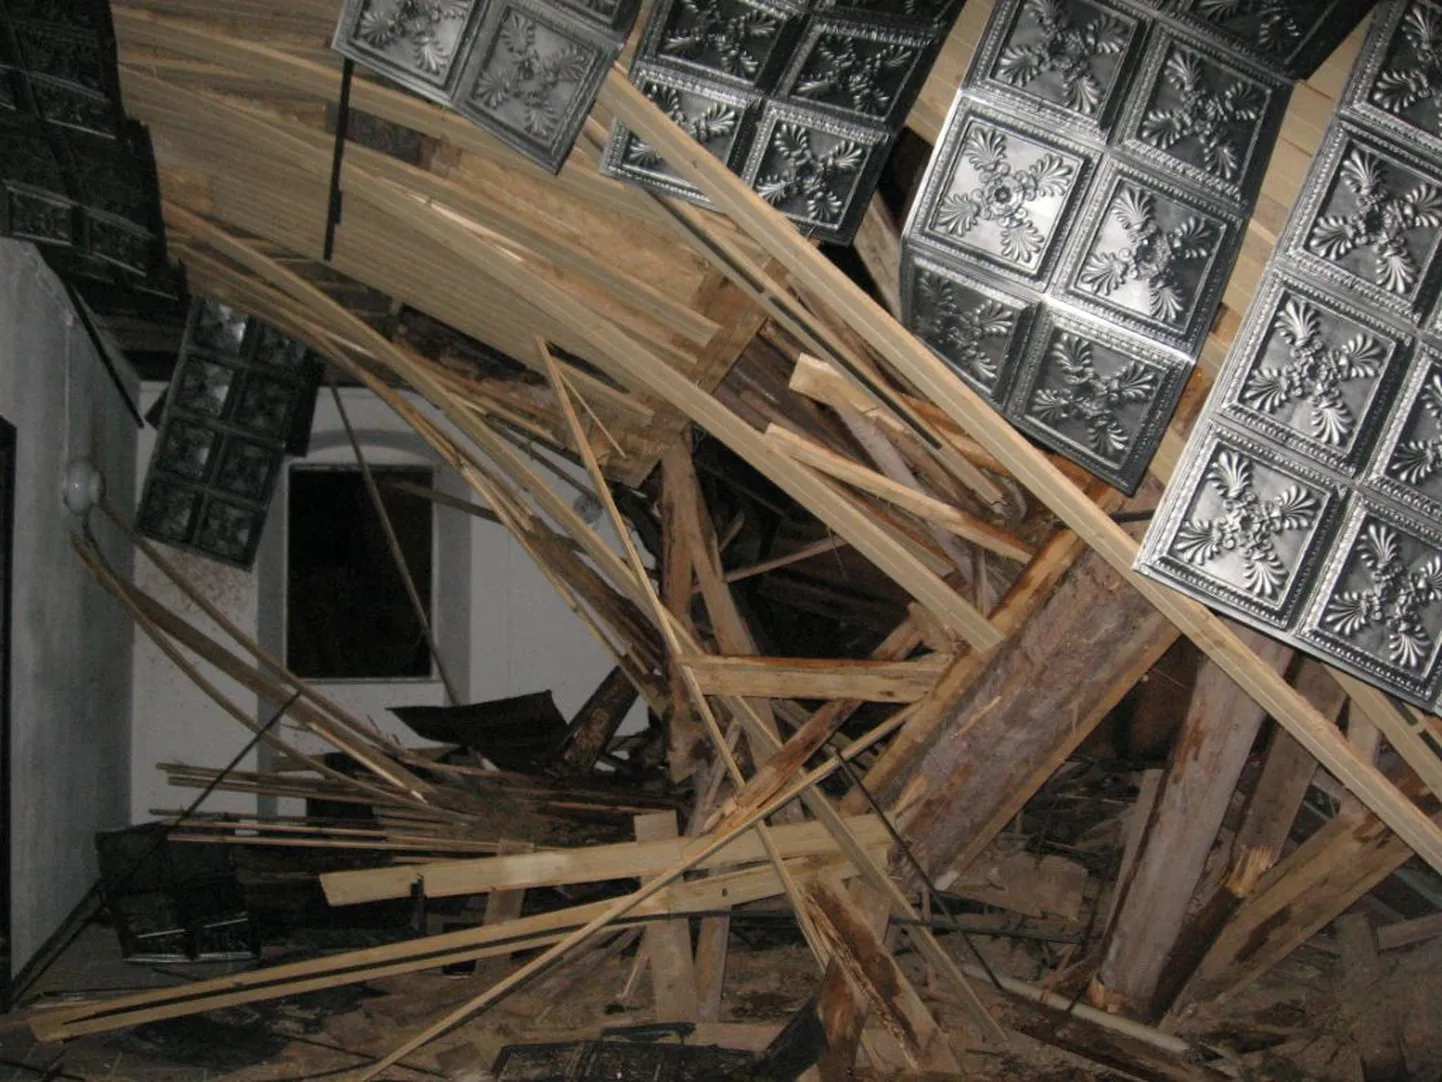 Из-за бури в церкви Вяйке-Маарья верхушка башни упала прямо на часовню, вызвав большие разрушения.